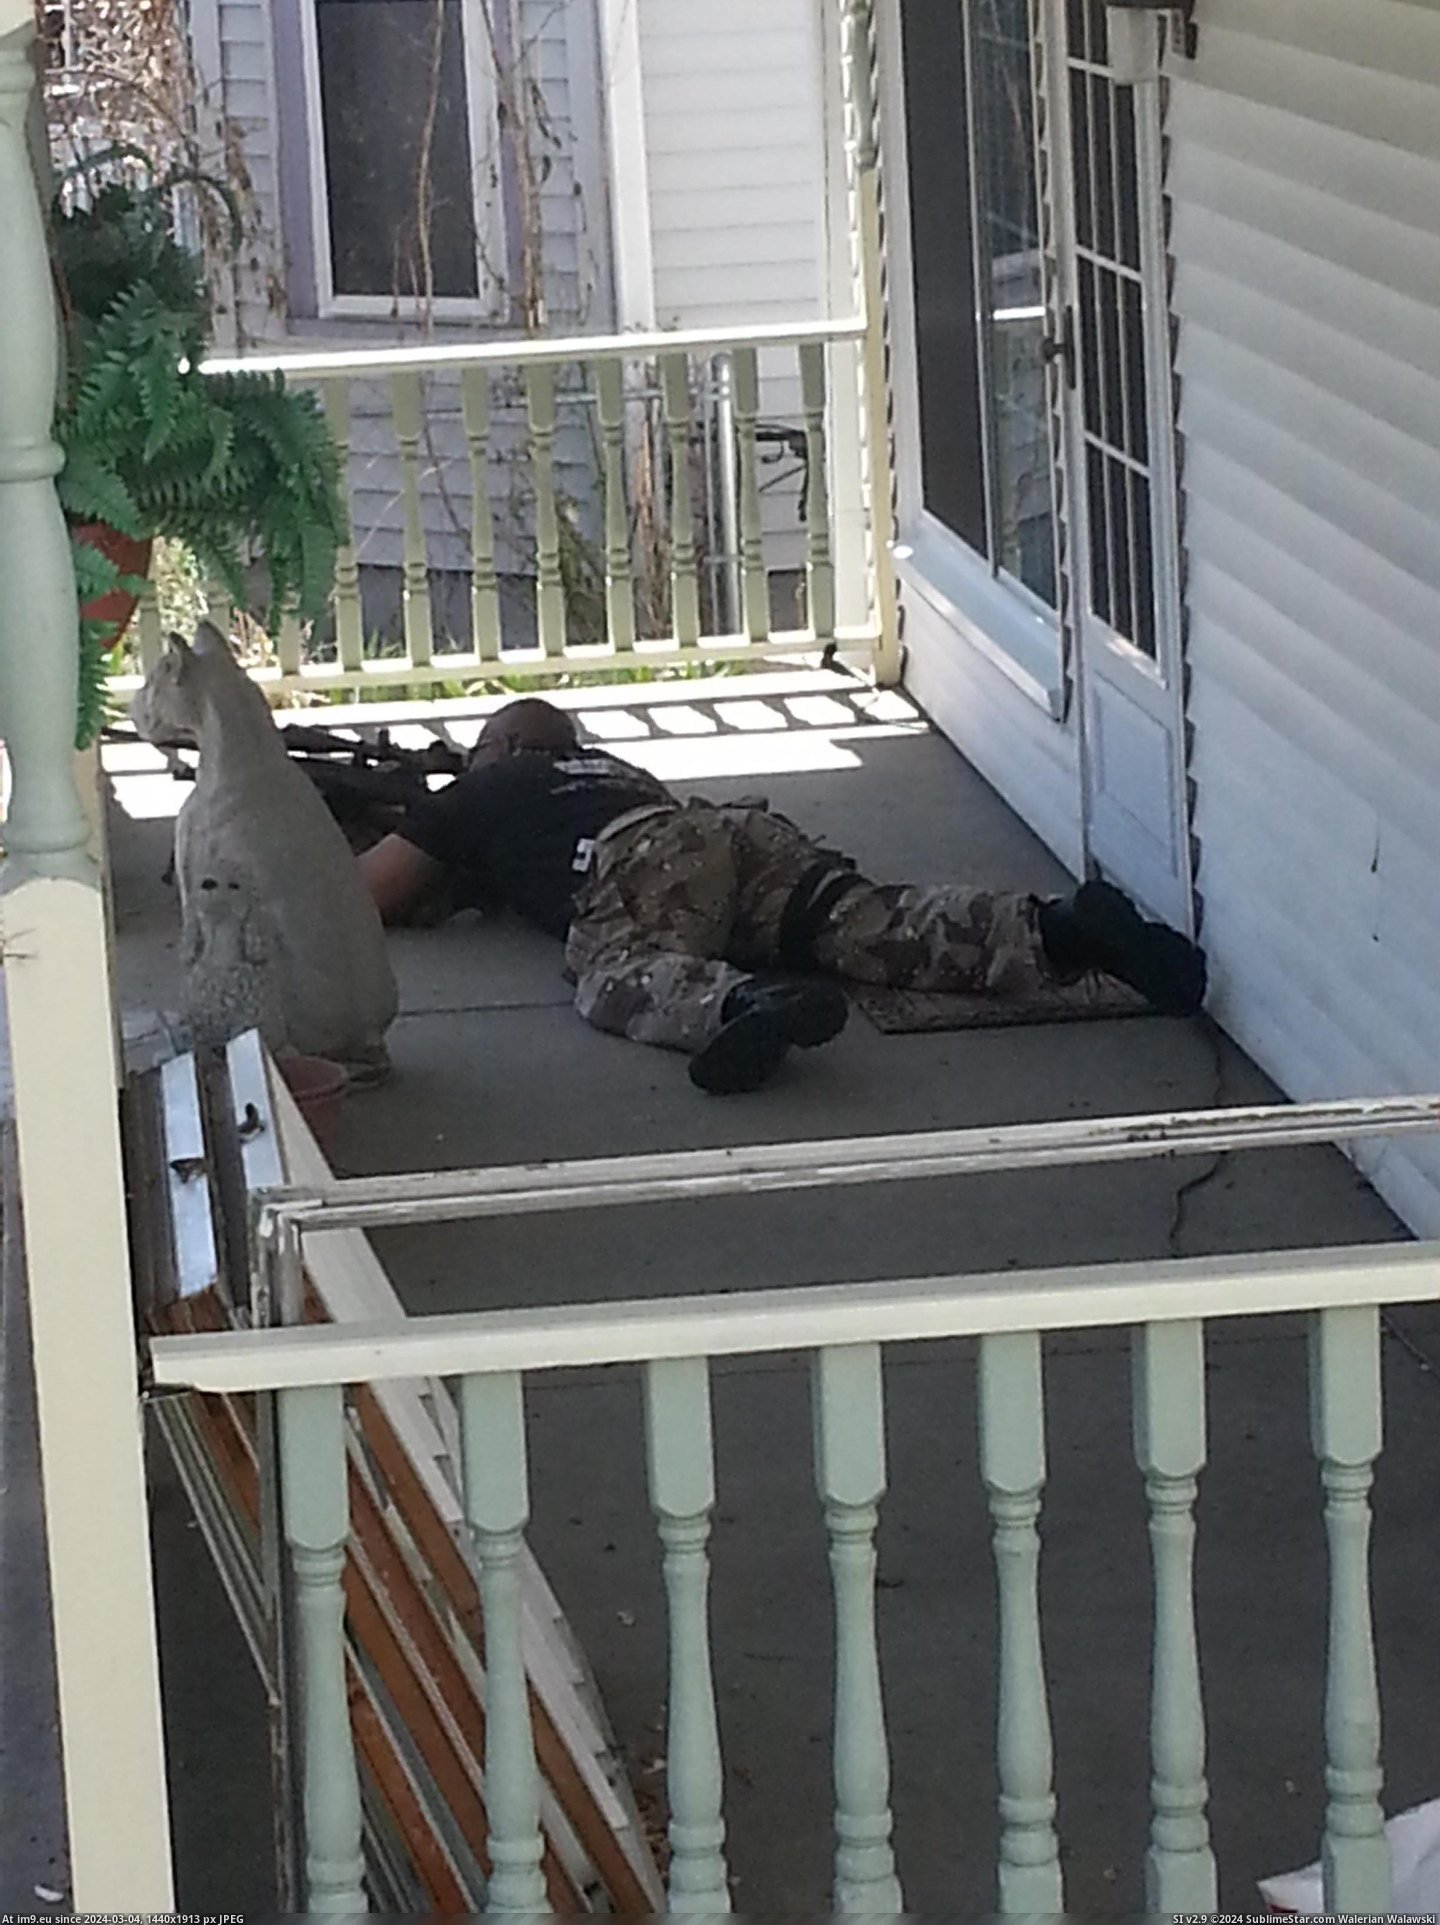 #Street #Spent #Sunday #Sniper #Swat #Easter #Porch #Stand [Pics] Spent my Easter Sunday with a SWAT sniper on the porch. Stand-off across the street. Pic. (Изображение из альбом My r/PICS favs))